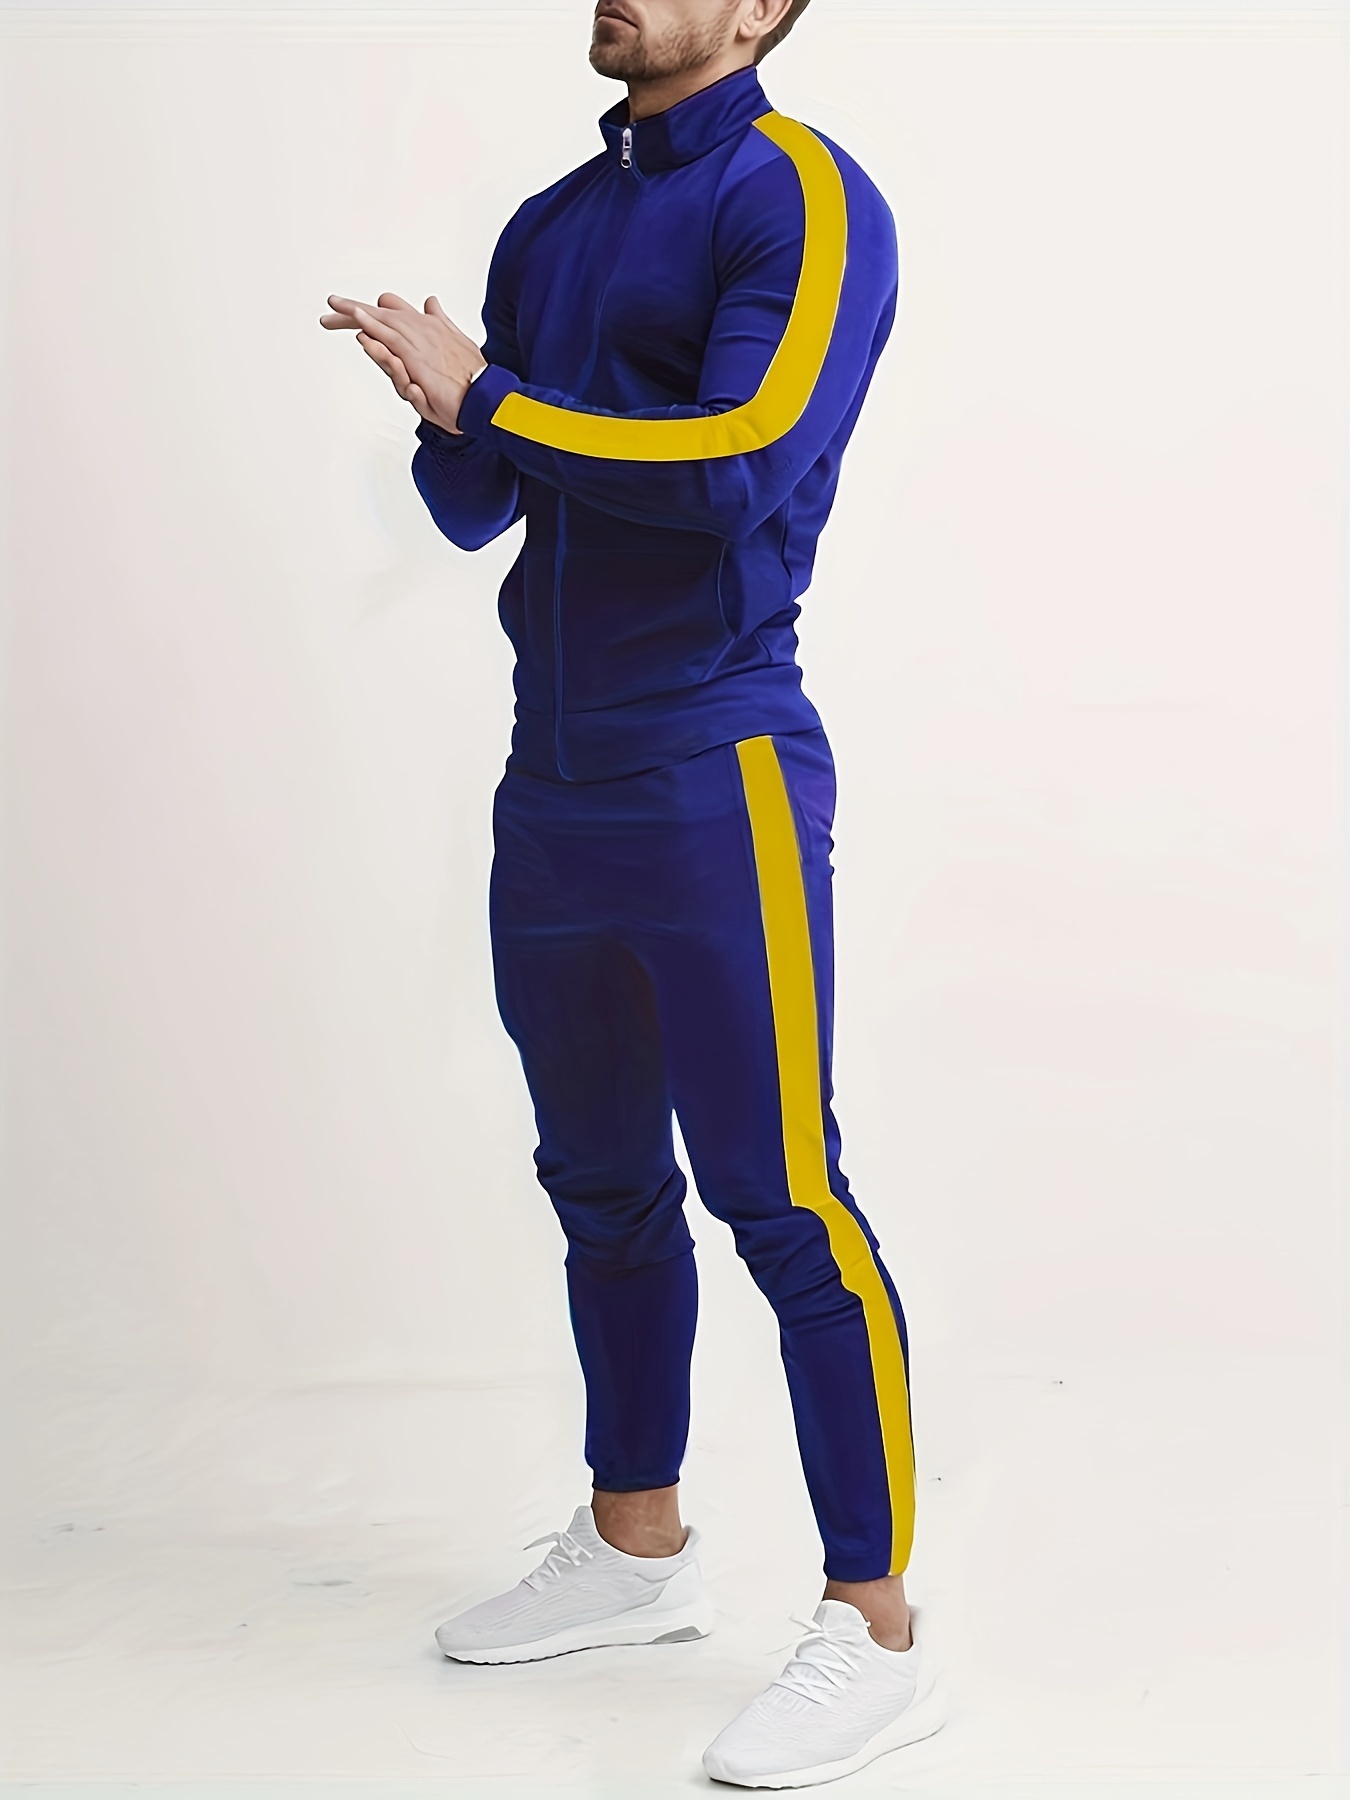 X-2 Men's Athletic Tracksuits 2 Pieces Set workout Warm up Suit